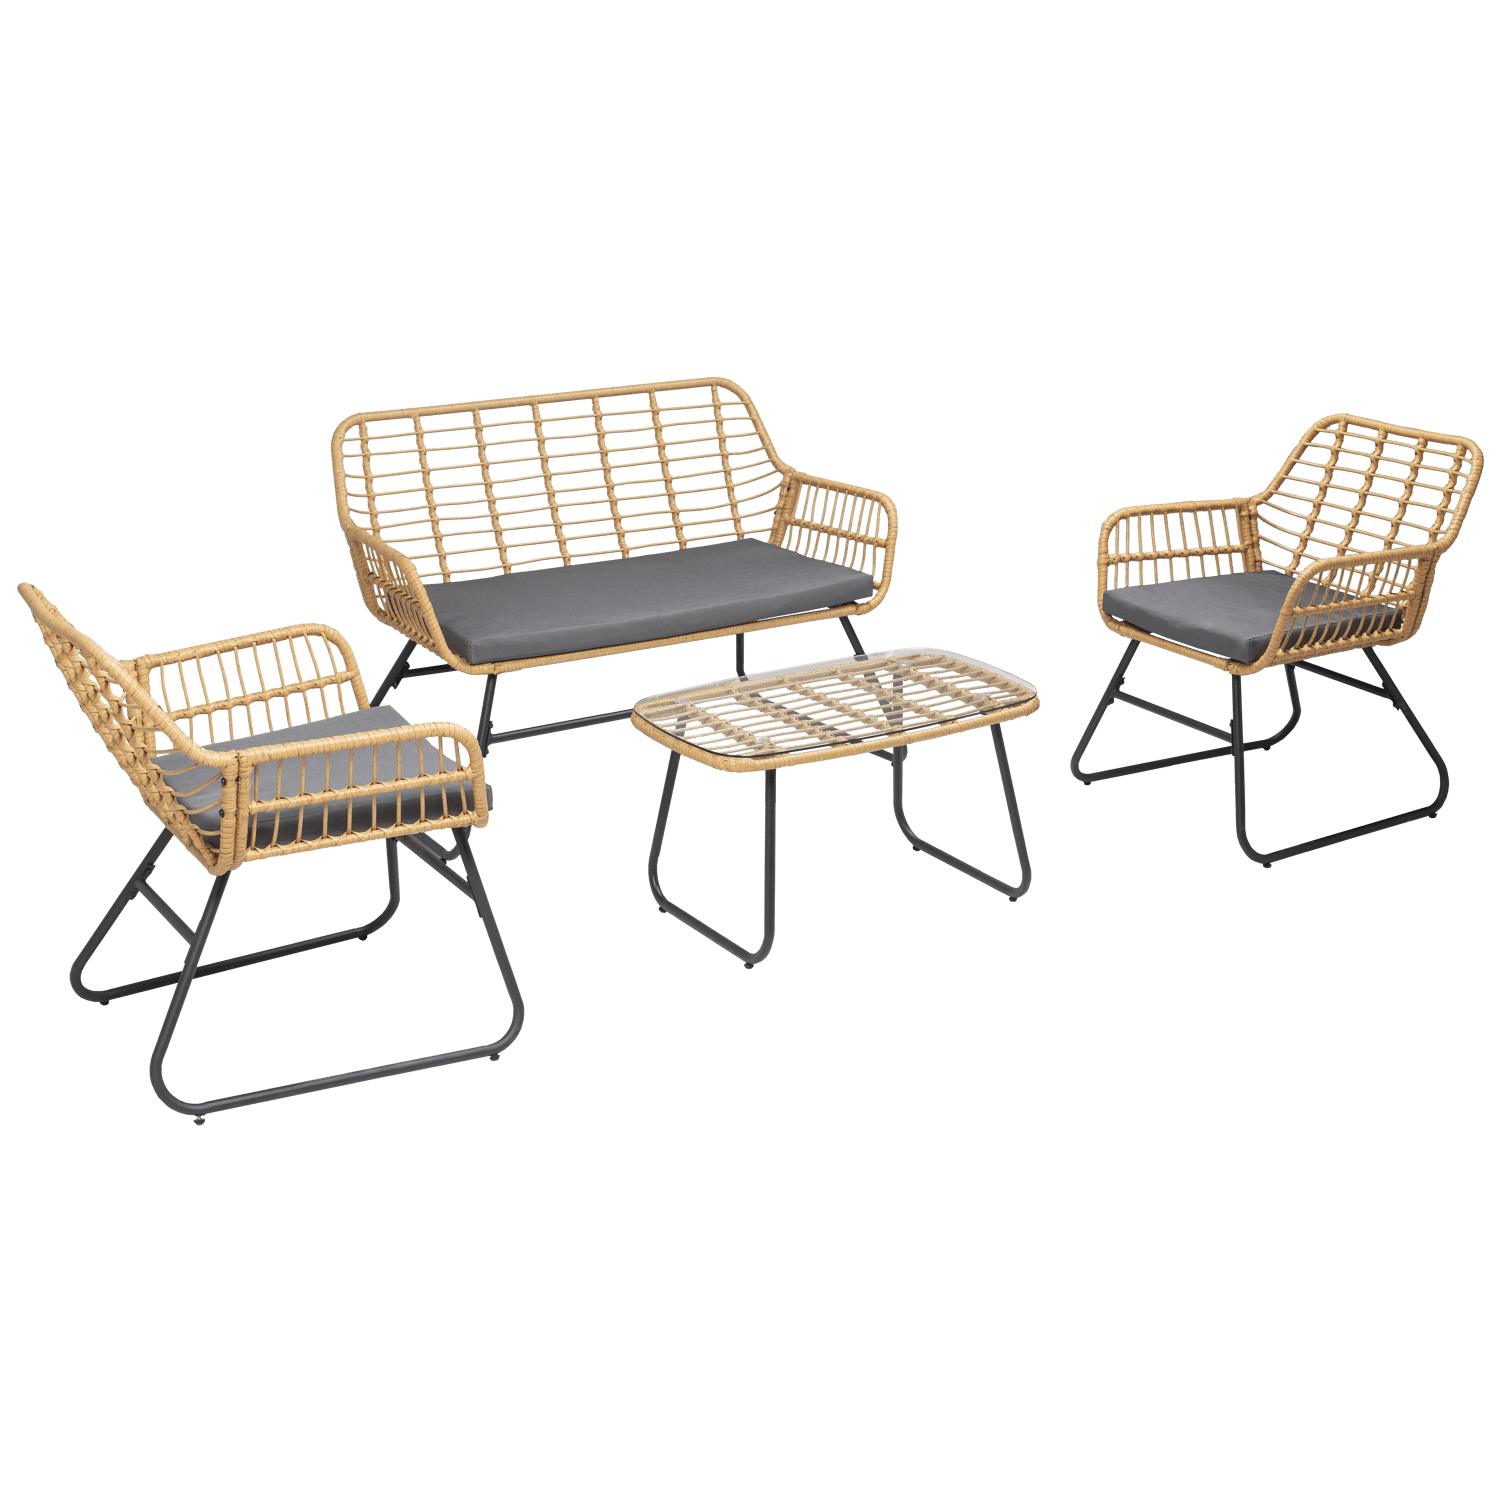 Gartenmöbel TIGA aus geflochtenem Harz 4 Sitzplätze - graue Kissen